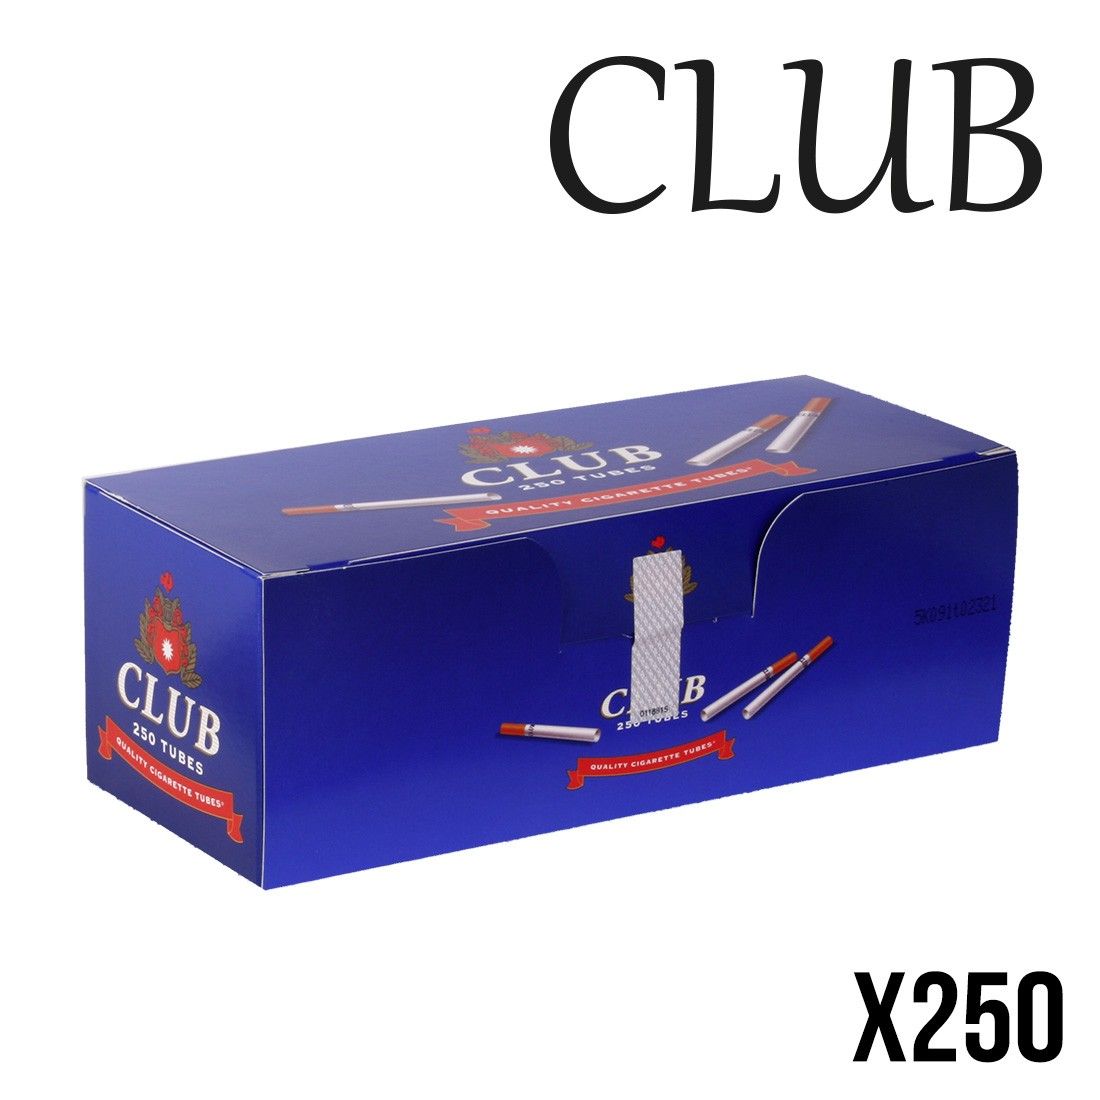 Acheter tube club 250 pour cigarette, tubes a cigarettes, Tube à